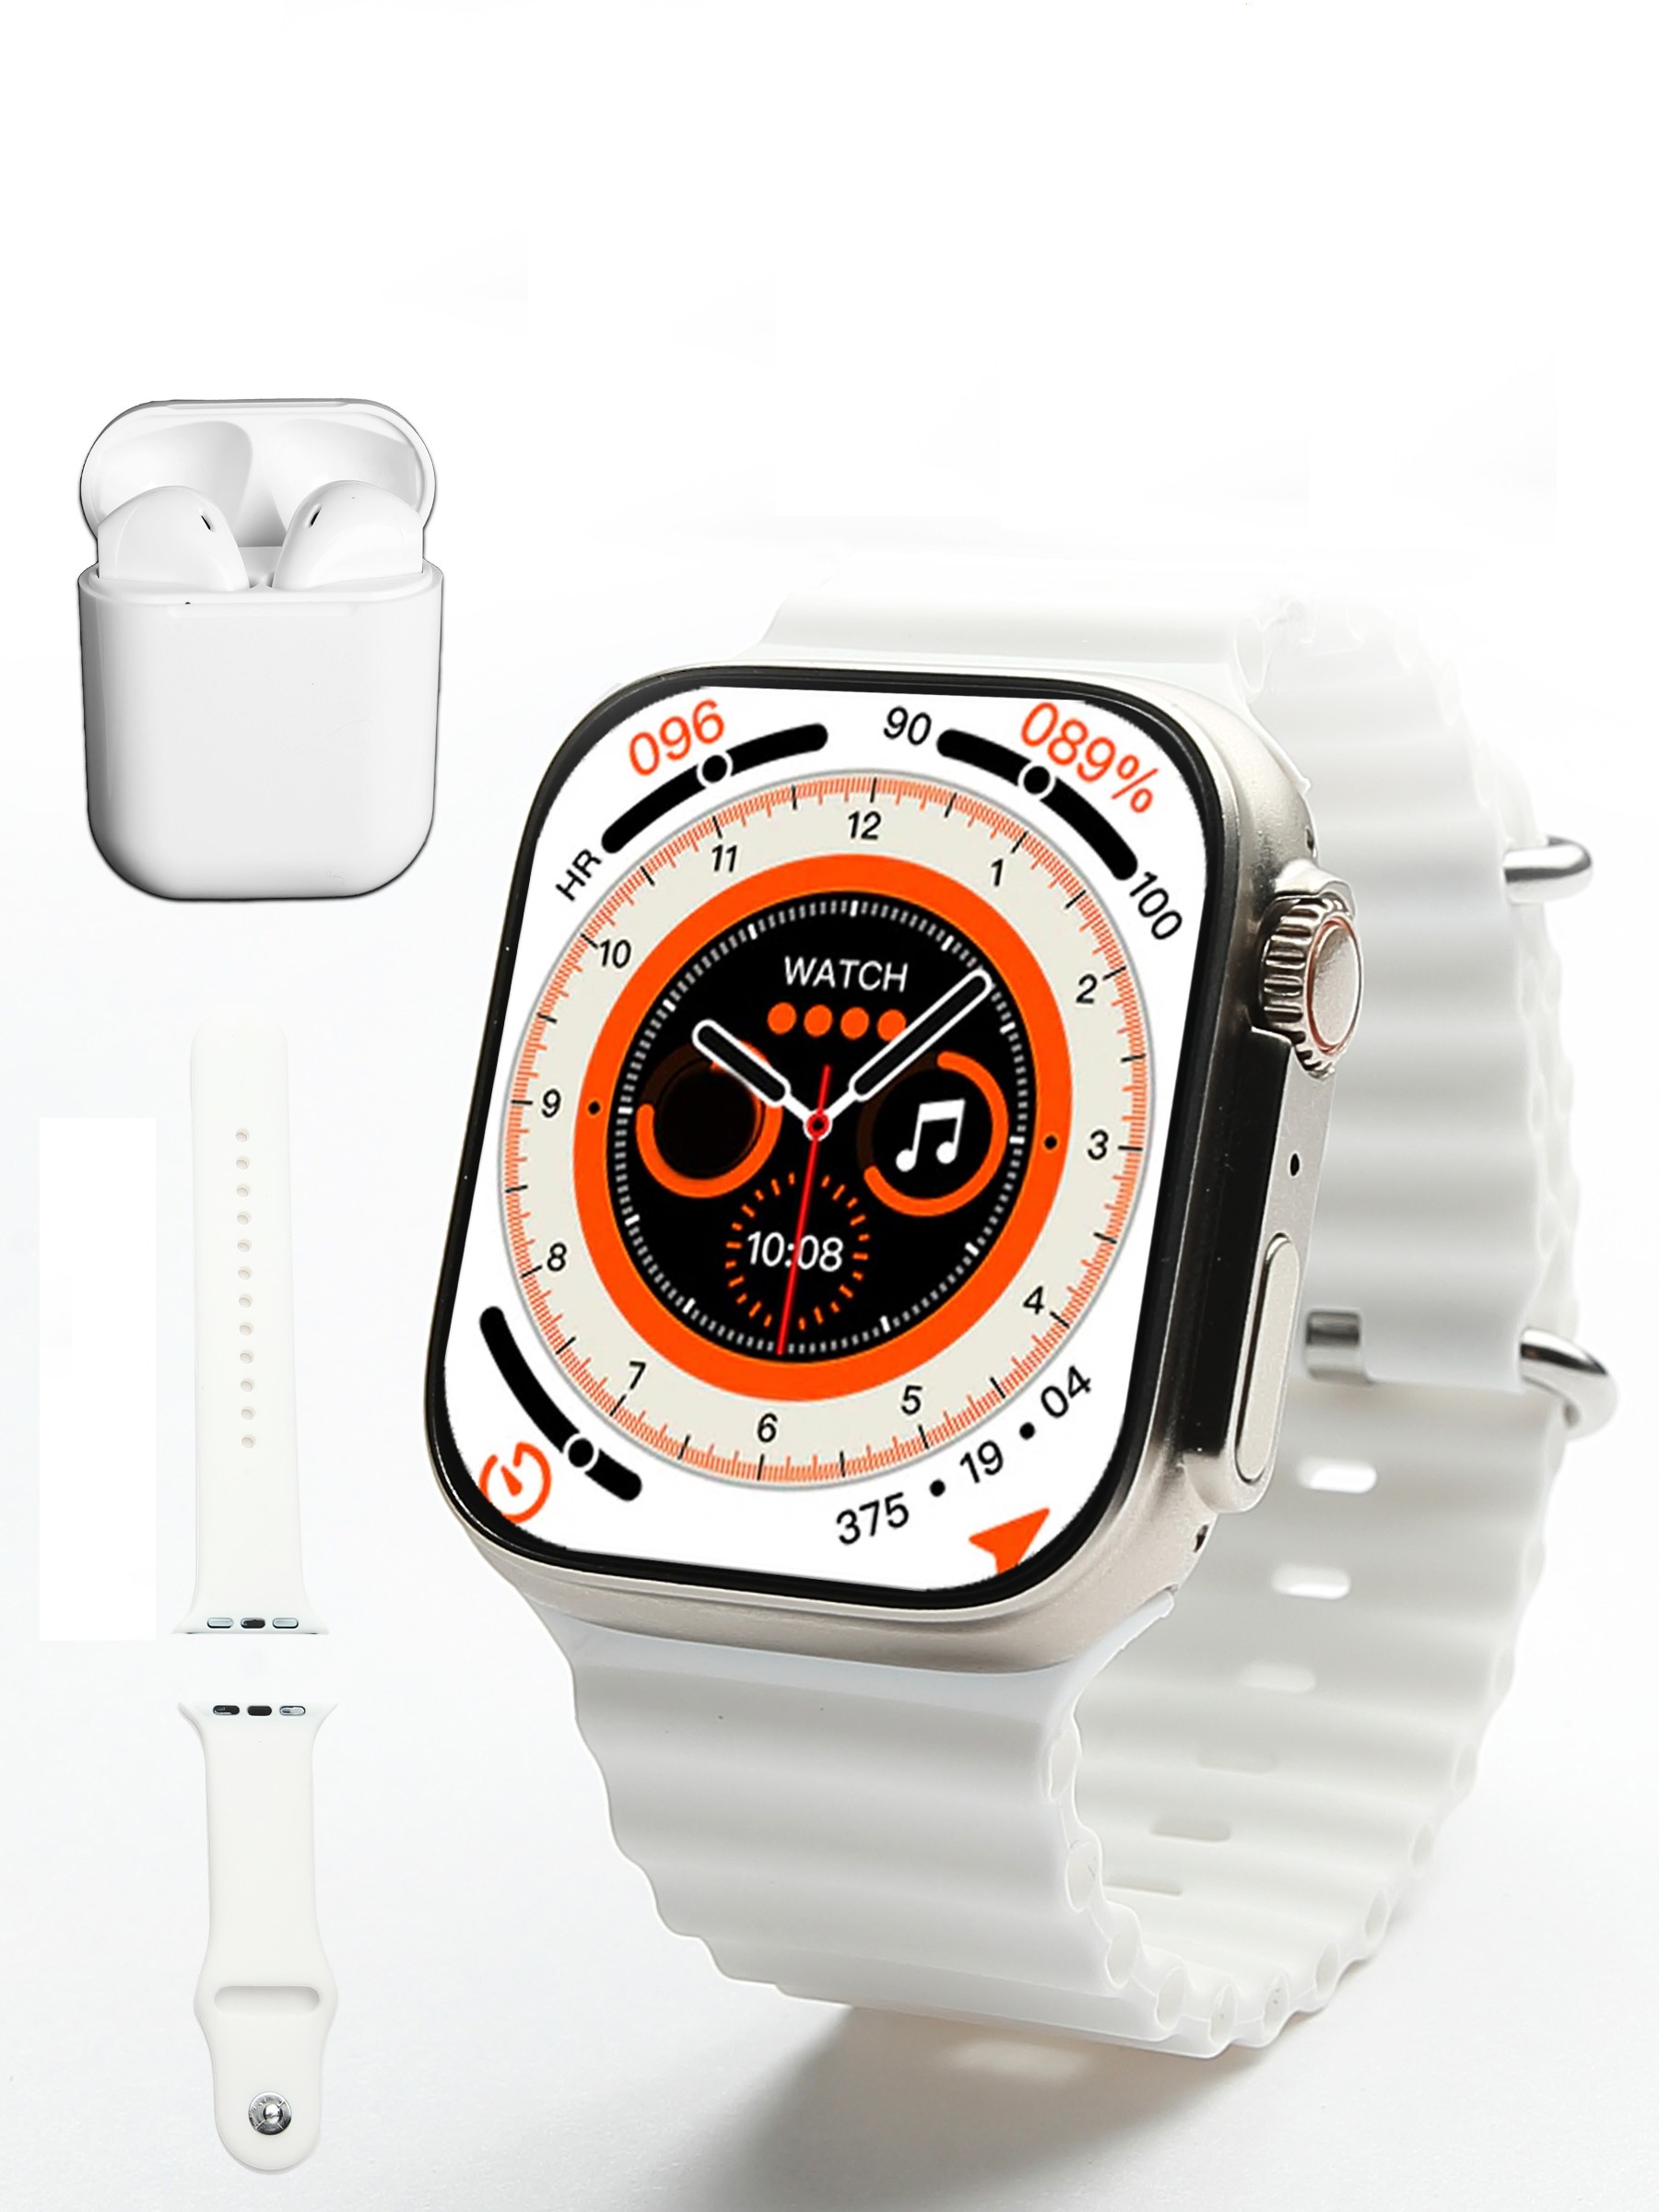 

Смарт-часы Smart watch i8 Ultra серебристый/белый, i8 Ultra